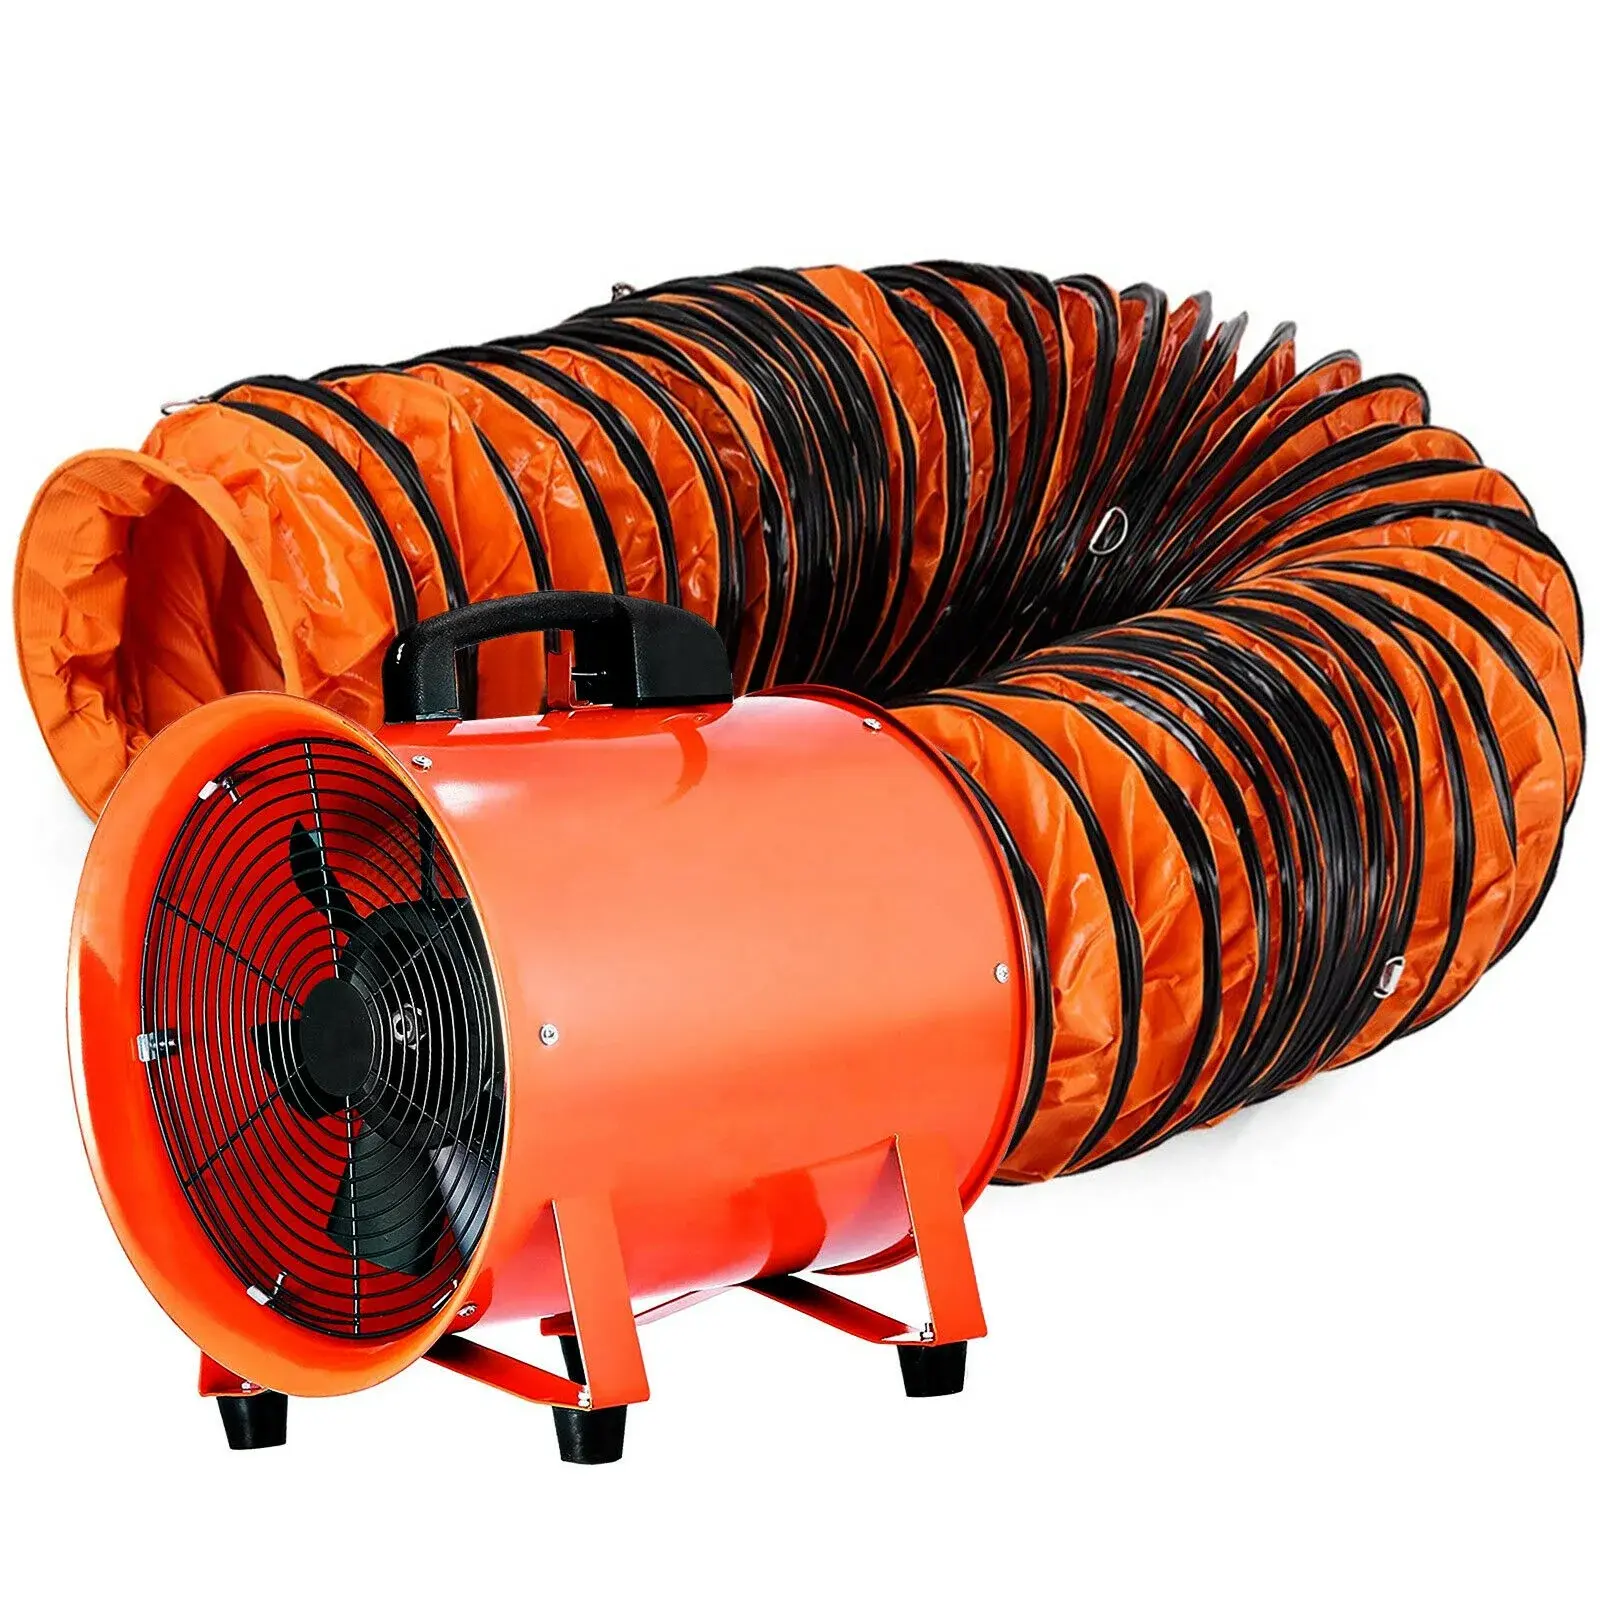 Ventilateur utilitaire à haute vitesse de 300mm Ventilateur de ventilateur portable